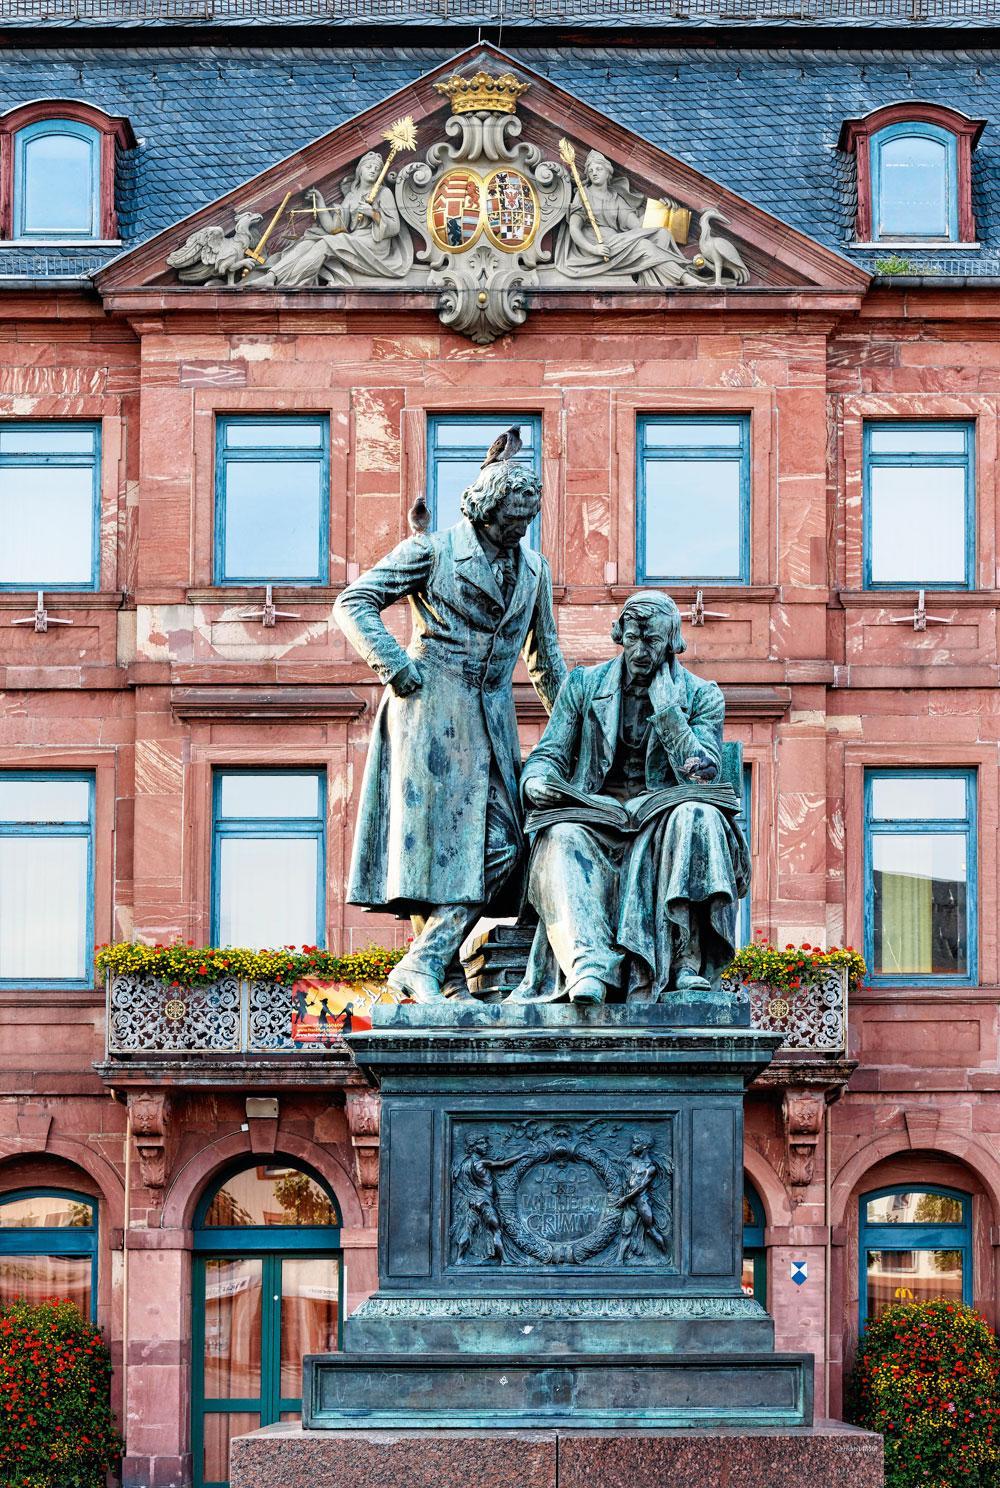 Boven. Hanau vormt het startpunt. Het standbeeld van de gebroeders Grimm prijkt er voor het stadhuis.